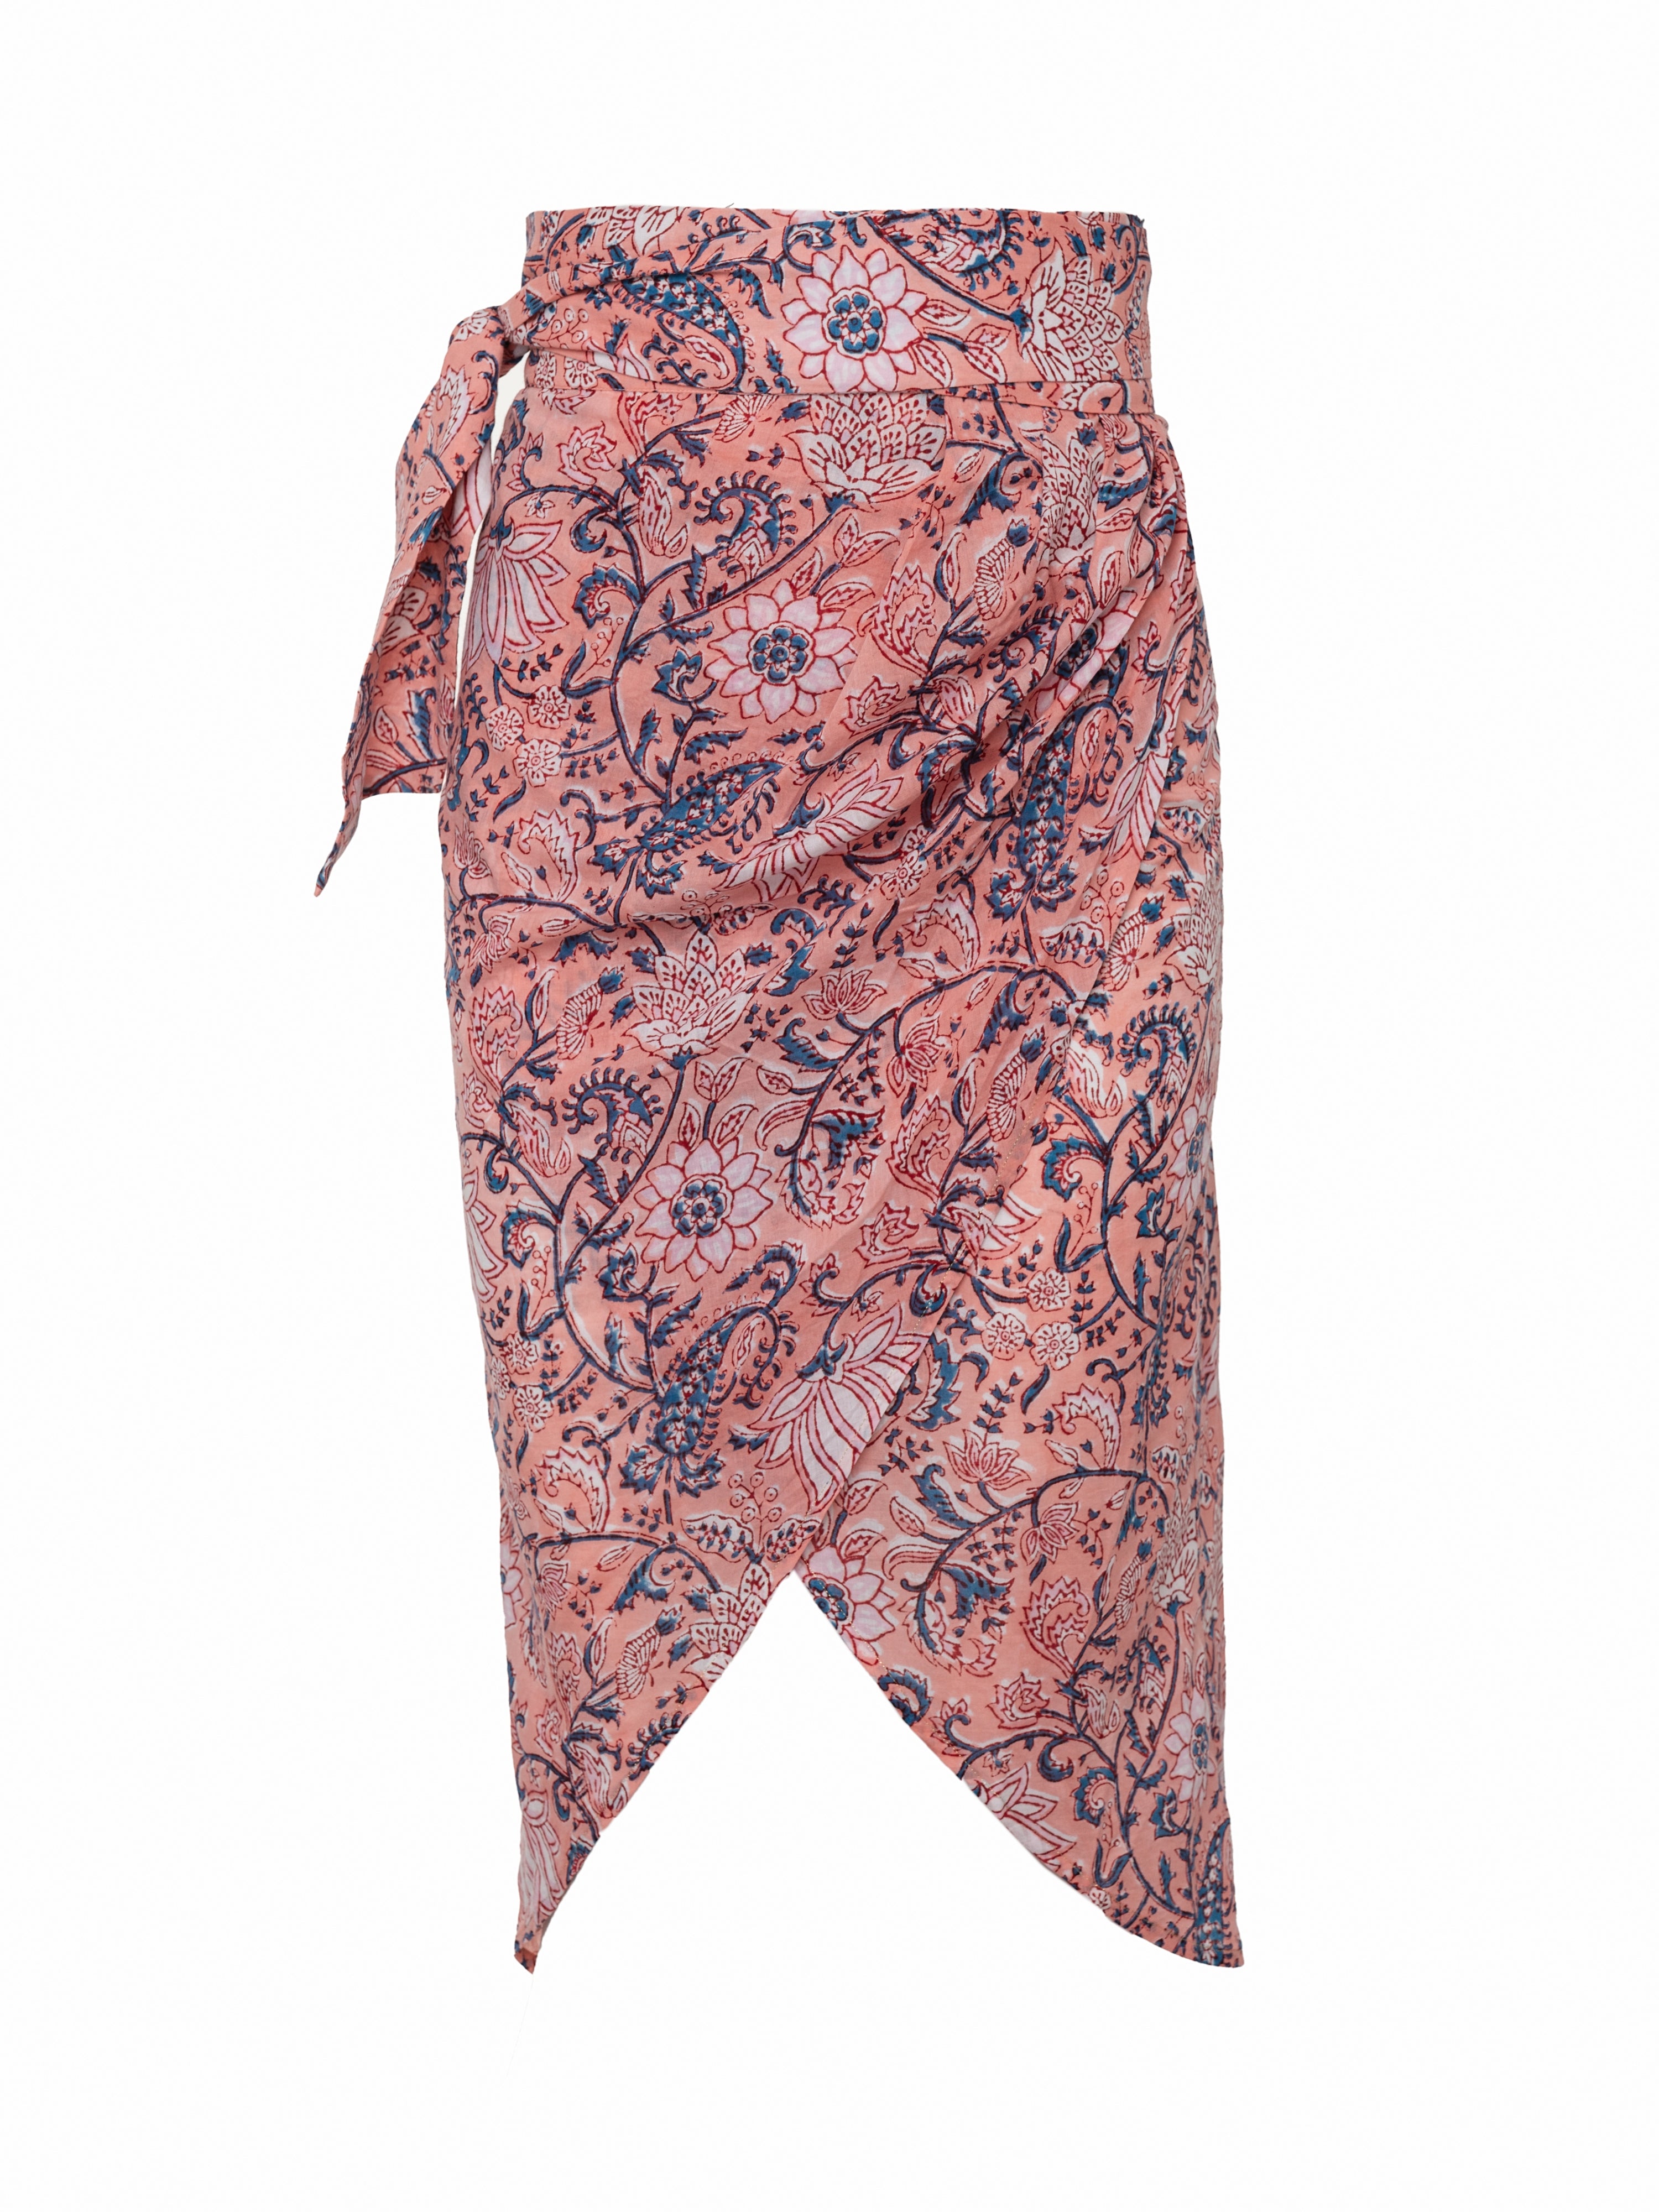 Mai Sarong Skirt - Pink-Blue Floral by Desert Queen